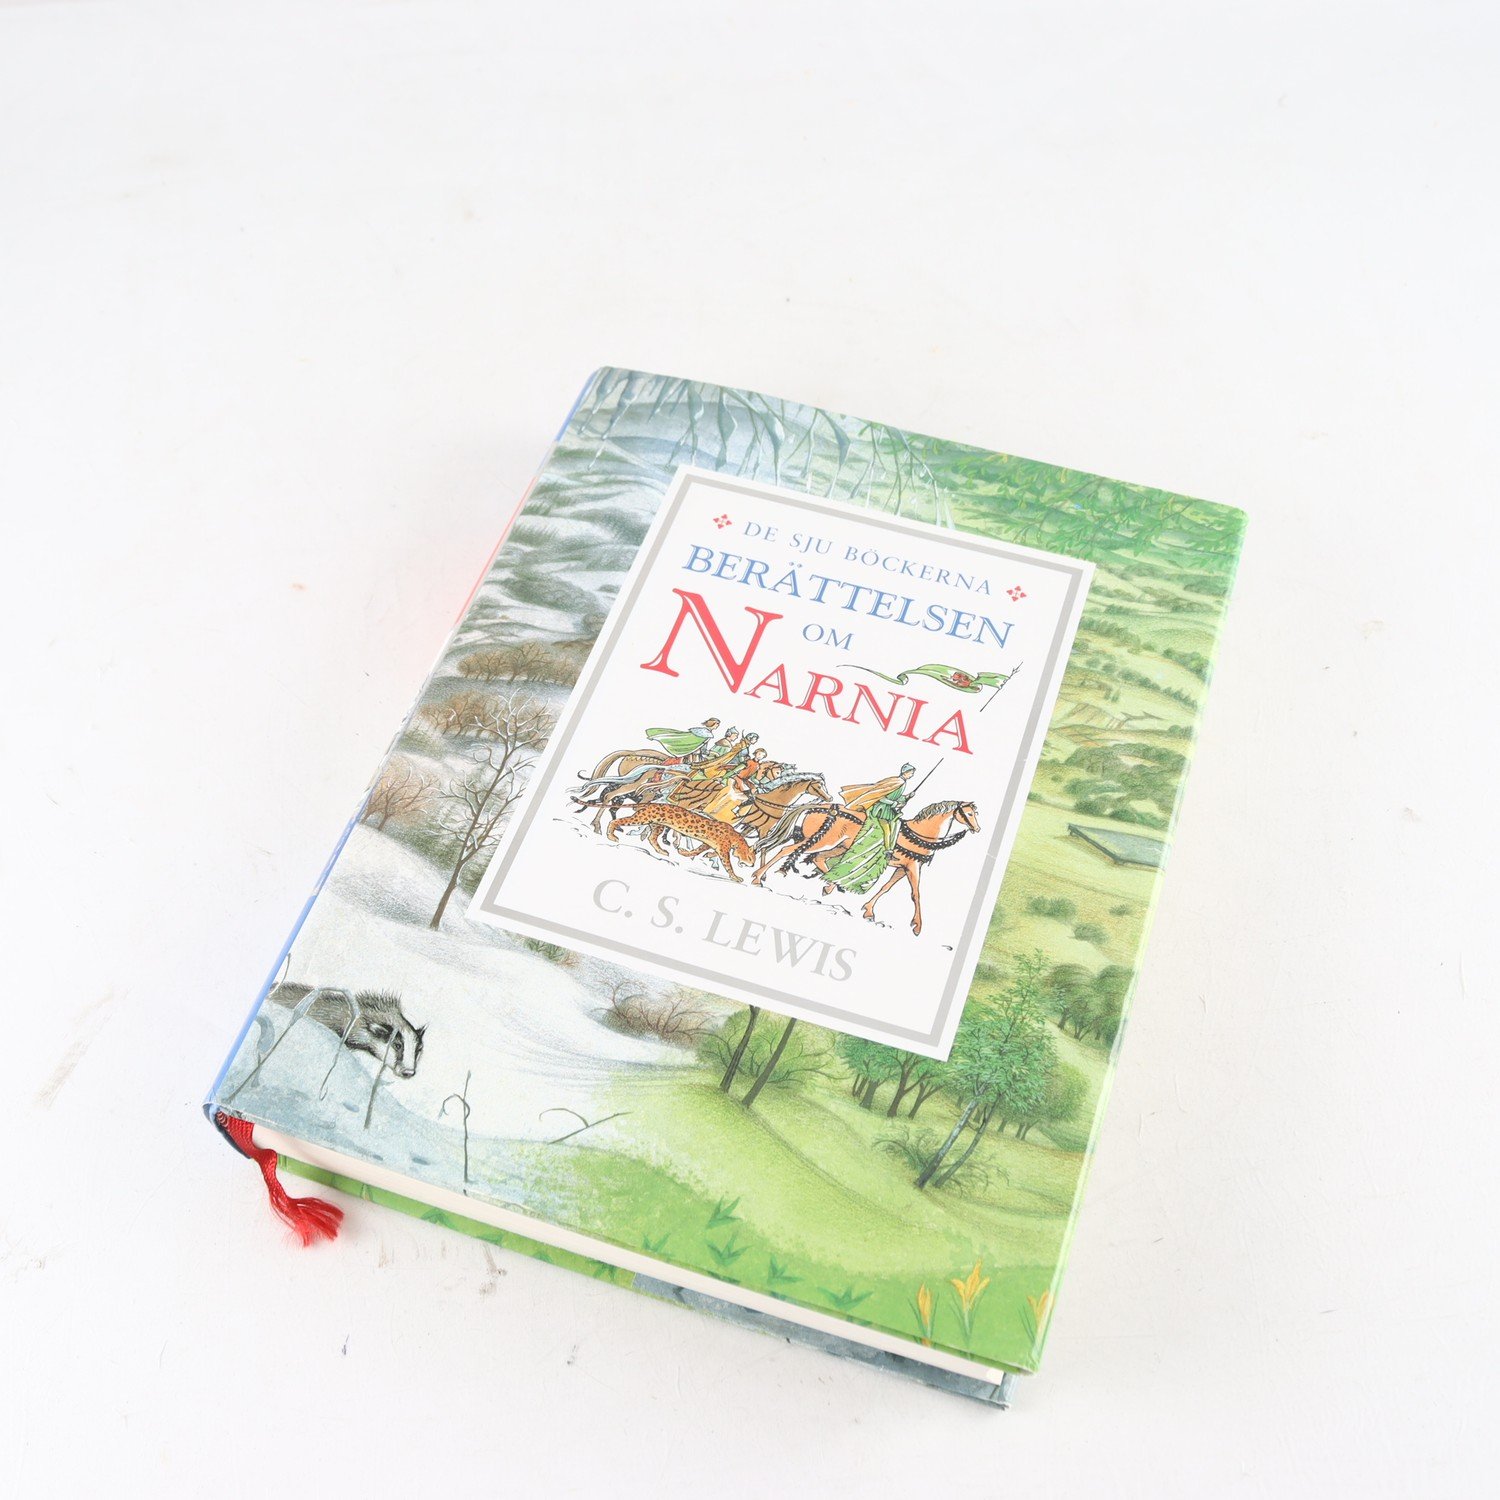 Berättelsen om Narnia, De sju böckerna, C. S. Lewis